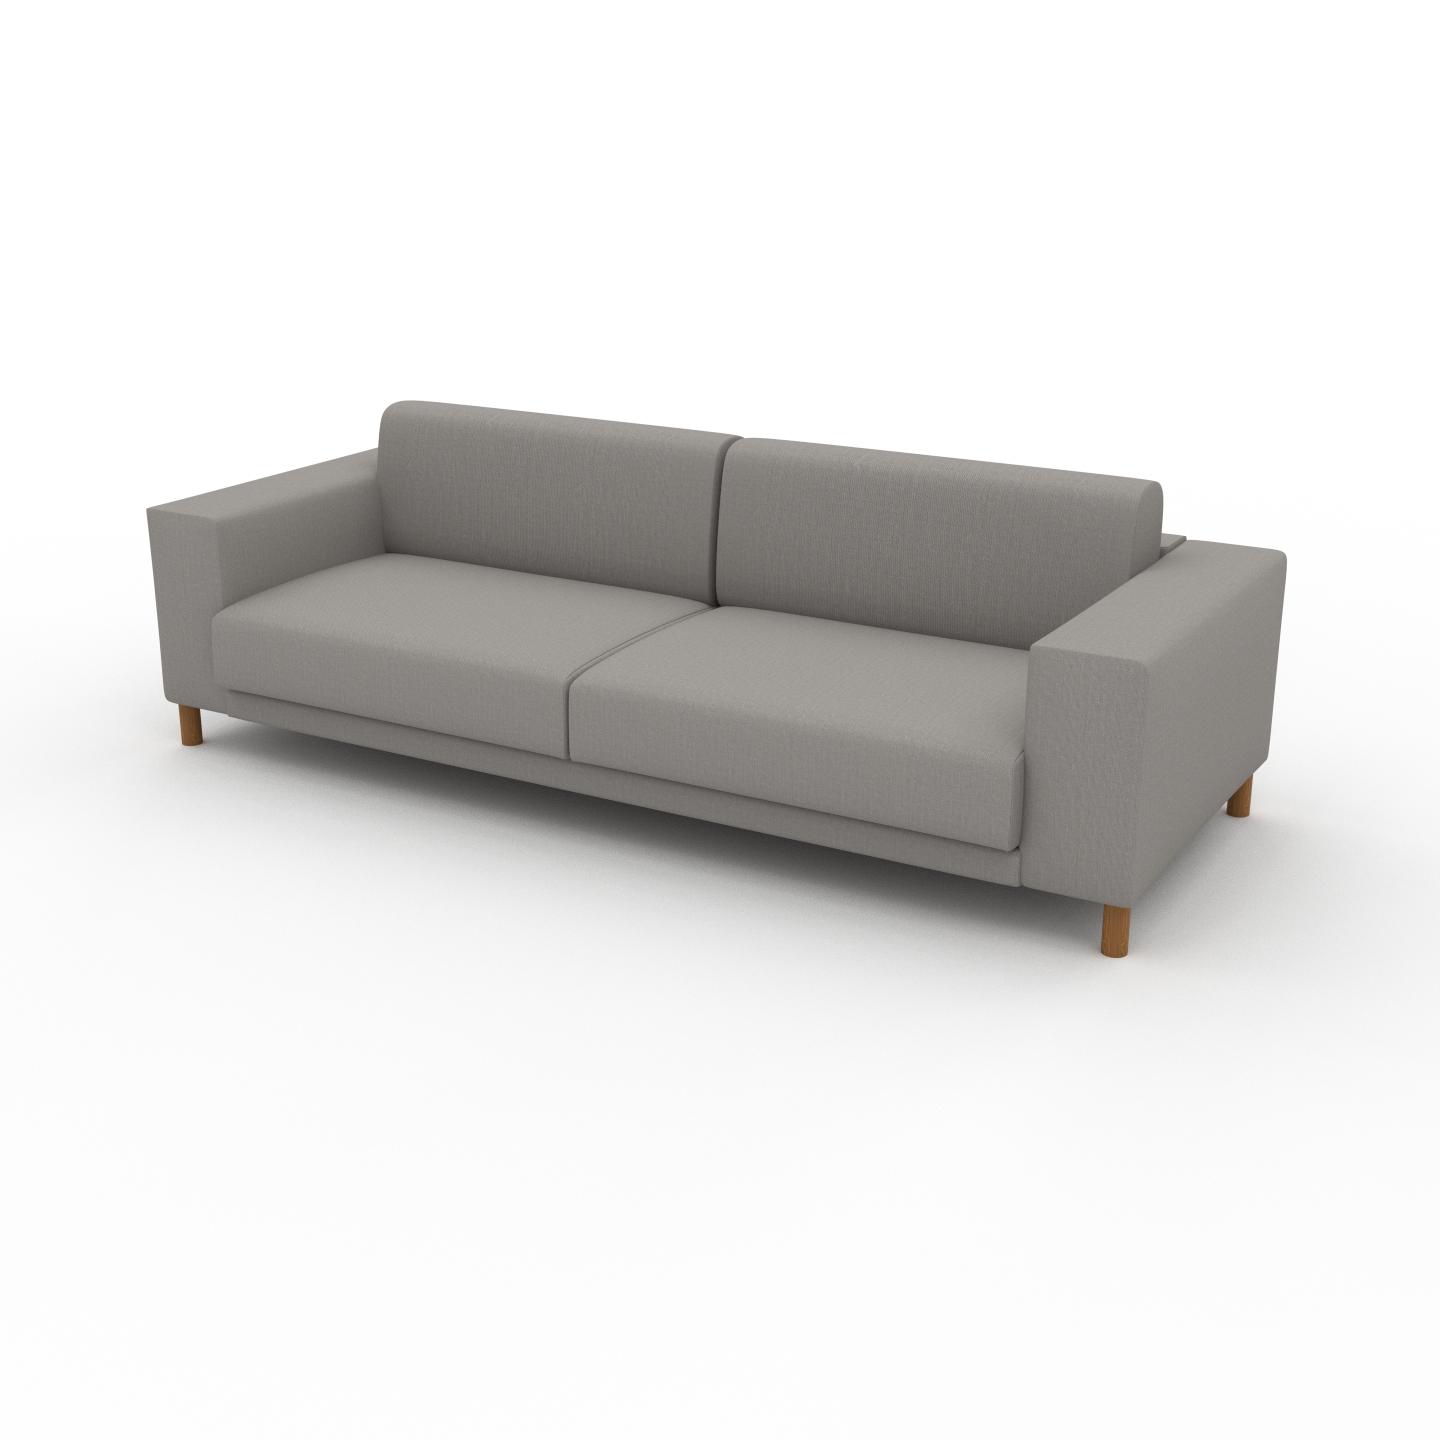 MYCS Sofa Sandgrau - Moderne Designer-Couch: Hochwertige Qualität, einzigartiges Design - 248 x 75 x 98 cm, Komplett anpassbar